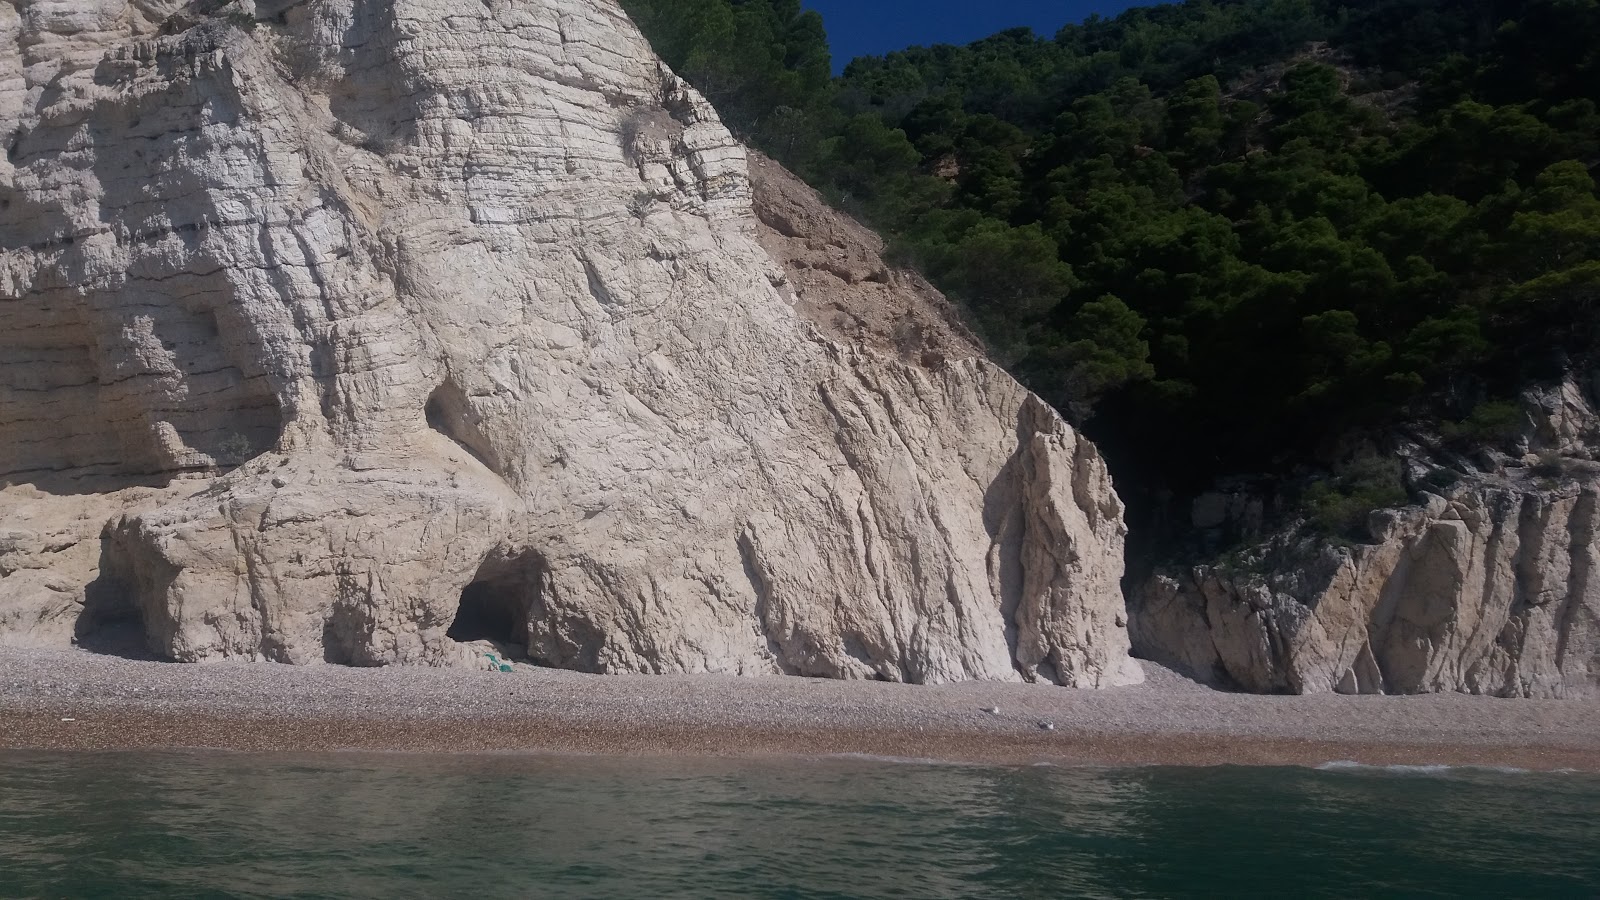 Baia Rossa'in fotoğrafı hafif ince çakıl taş yüzey ile